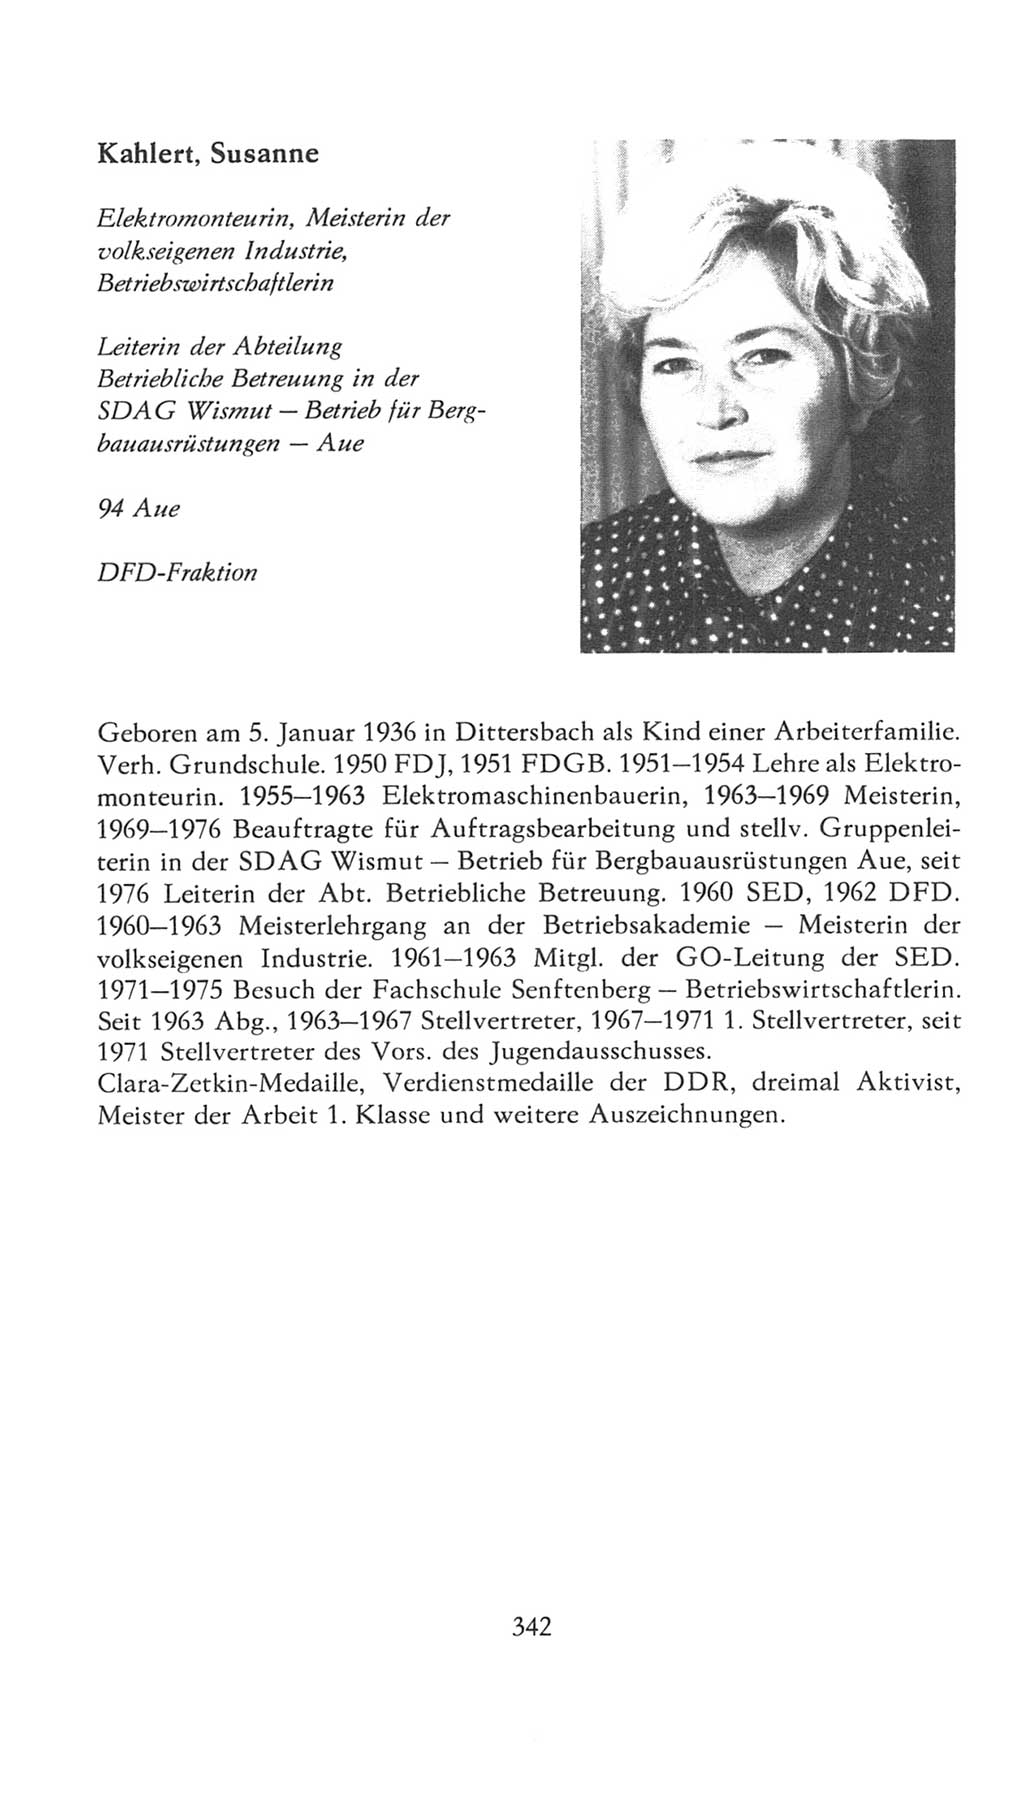 Volkskammer (VK) der Deutschen Demokratischen Republik (DDR), 7. Wahlperiode 1976-1981, Seite 342 (VK. DDR 7. WP. 1976-1981, S. 342)